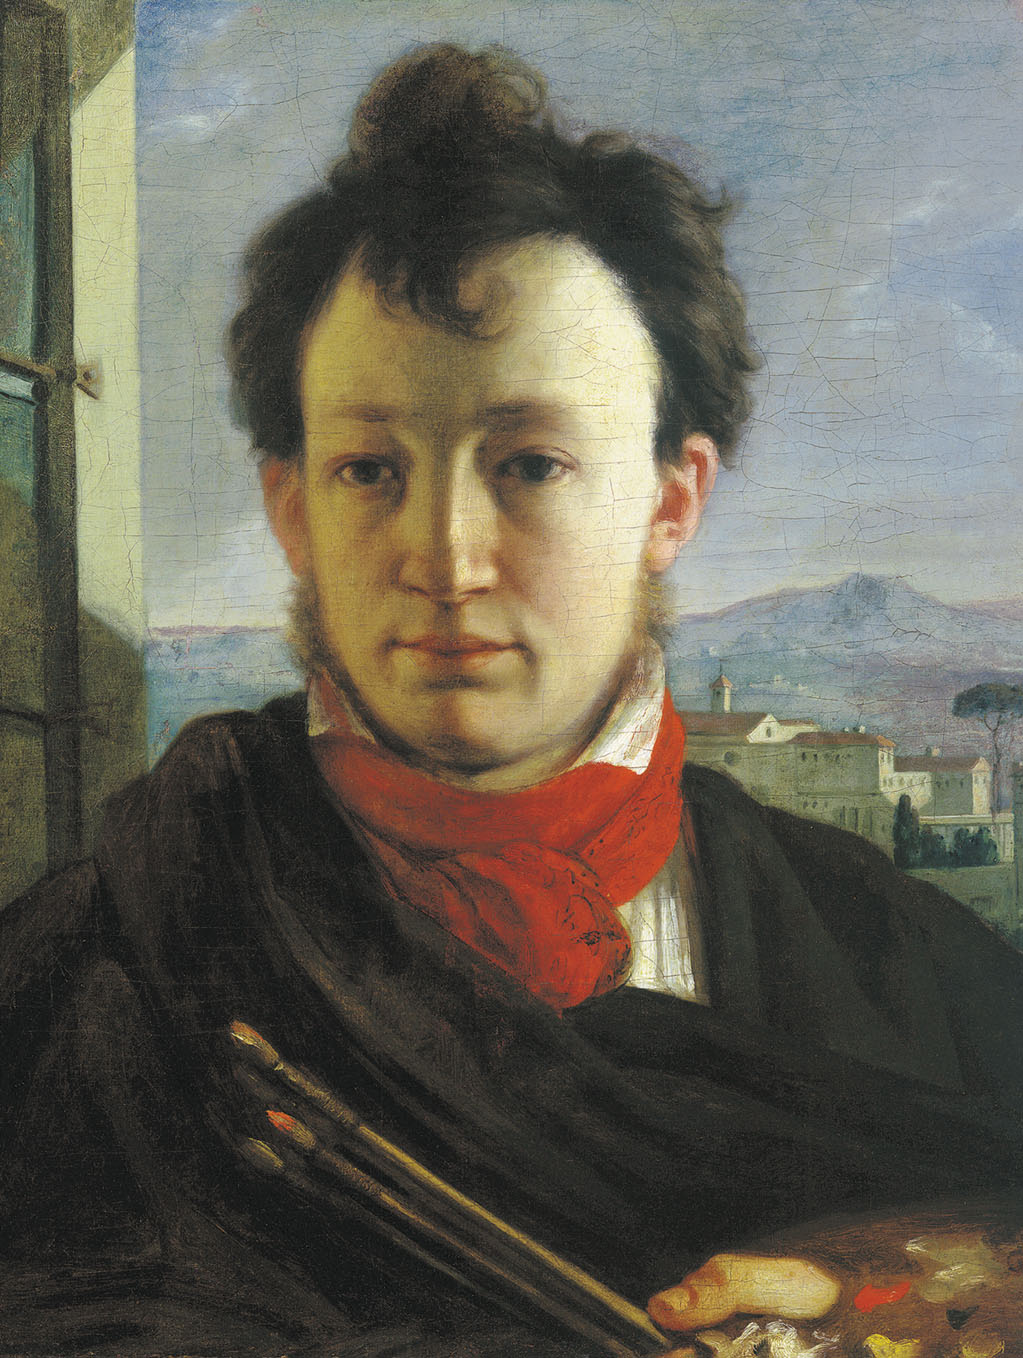 Варнек. Автопортрет с палитрой и кистями в рук. 1805-1806